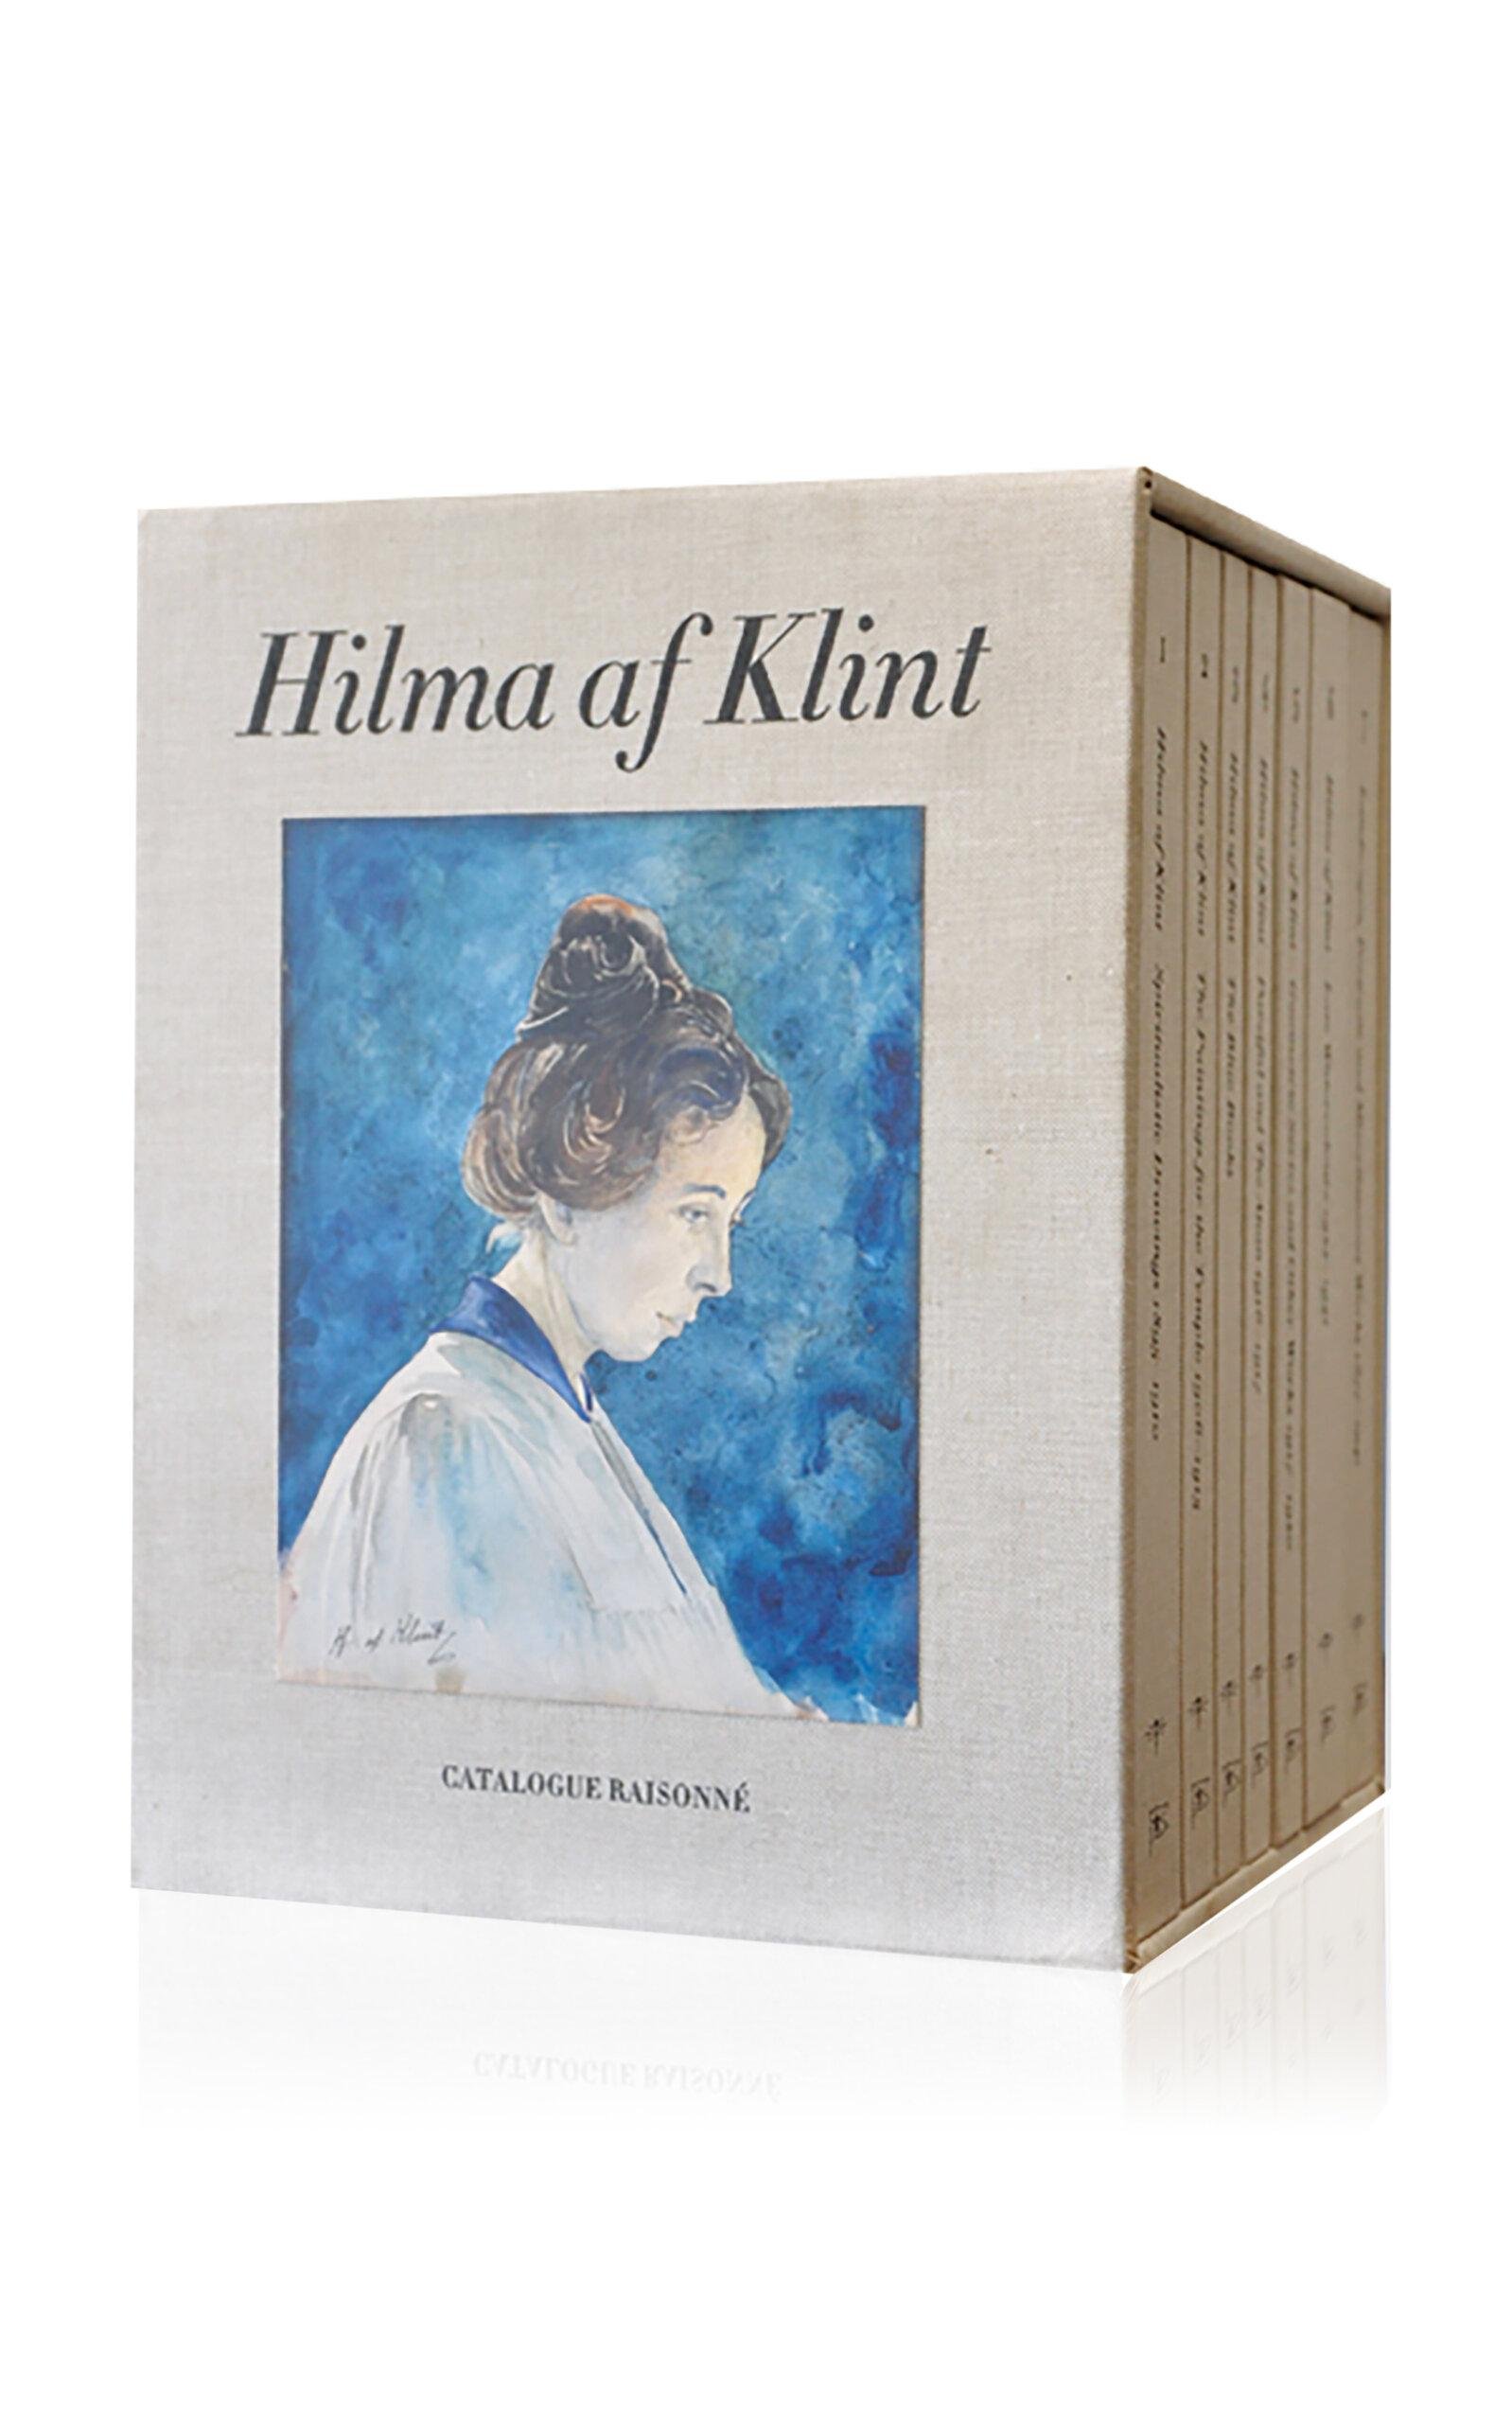 Maison Plage - Hilma af Klint: The Complete Catalogue Raisonné: Volumes I - VII - Multi - Moda Operandi by MAISON PLAGE